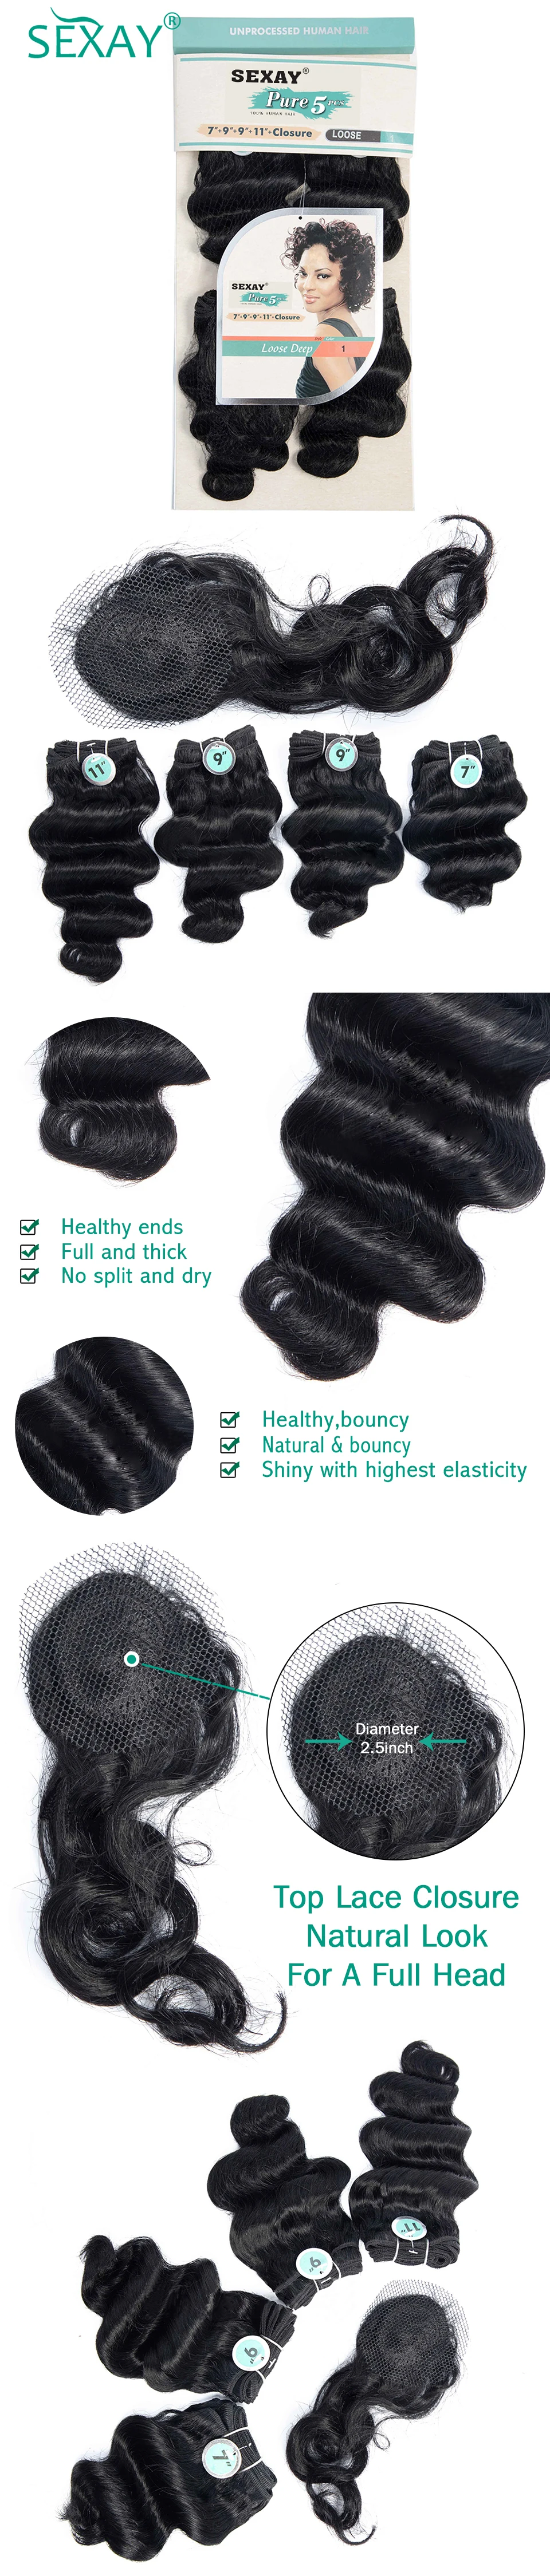 4 Связки с верхней синтетическое закрытие шнурка SEXAY не волосы remy пряди человеческих волос для наращивания#1 темно-черный цвет бразильские свободные глубокие волосы